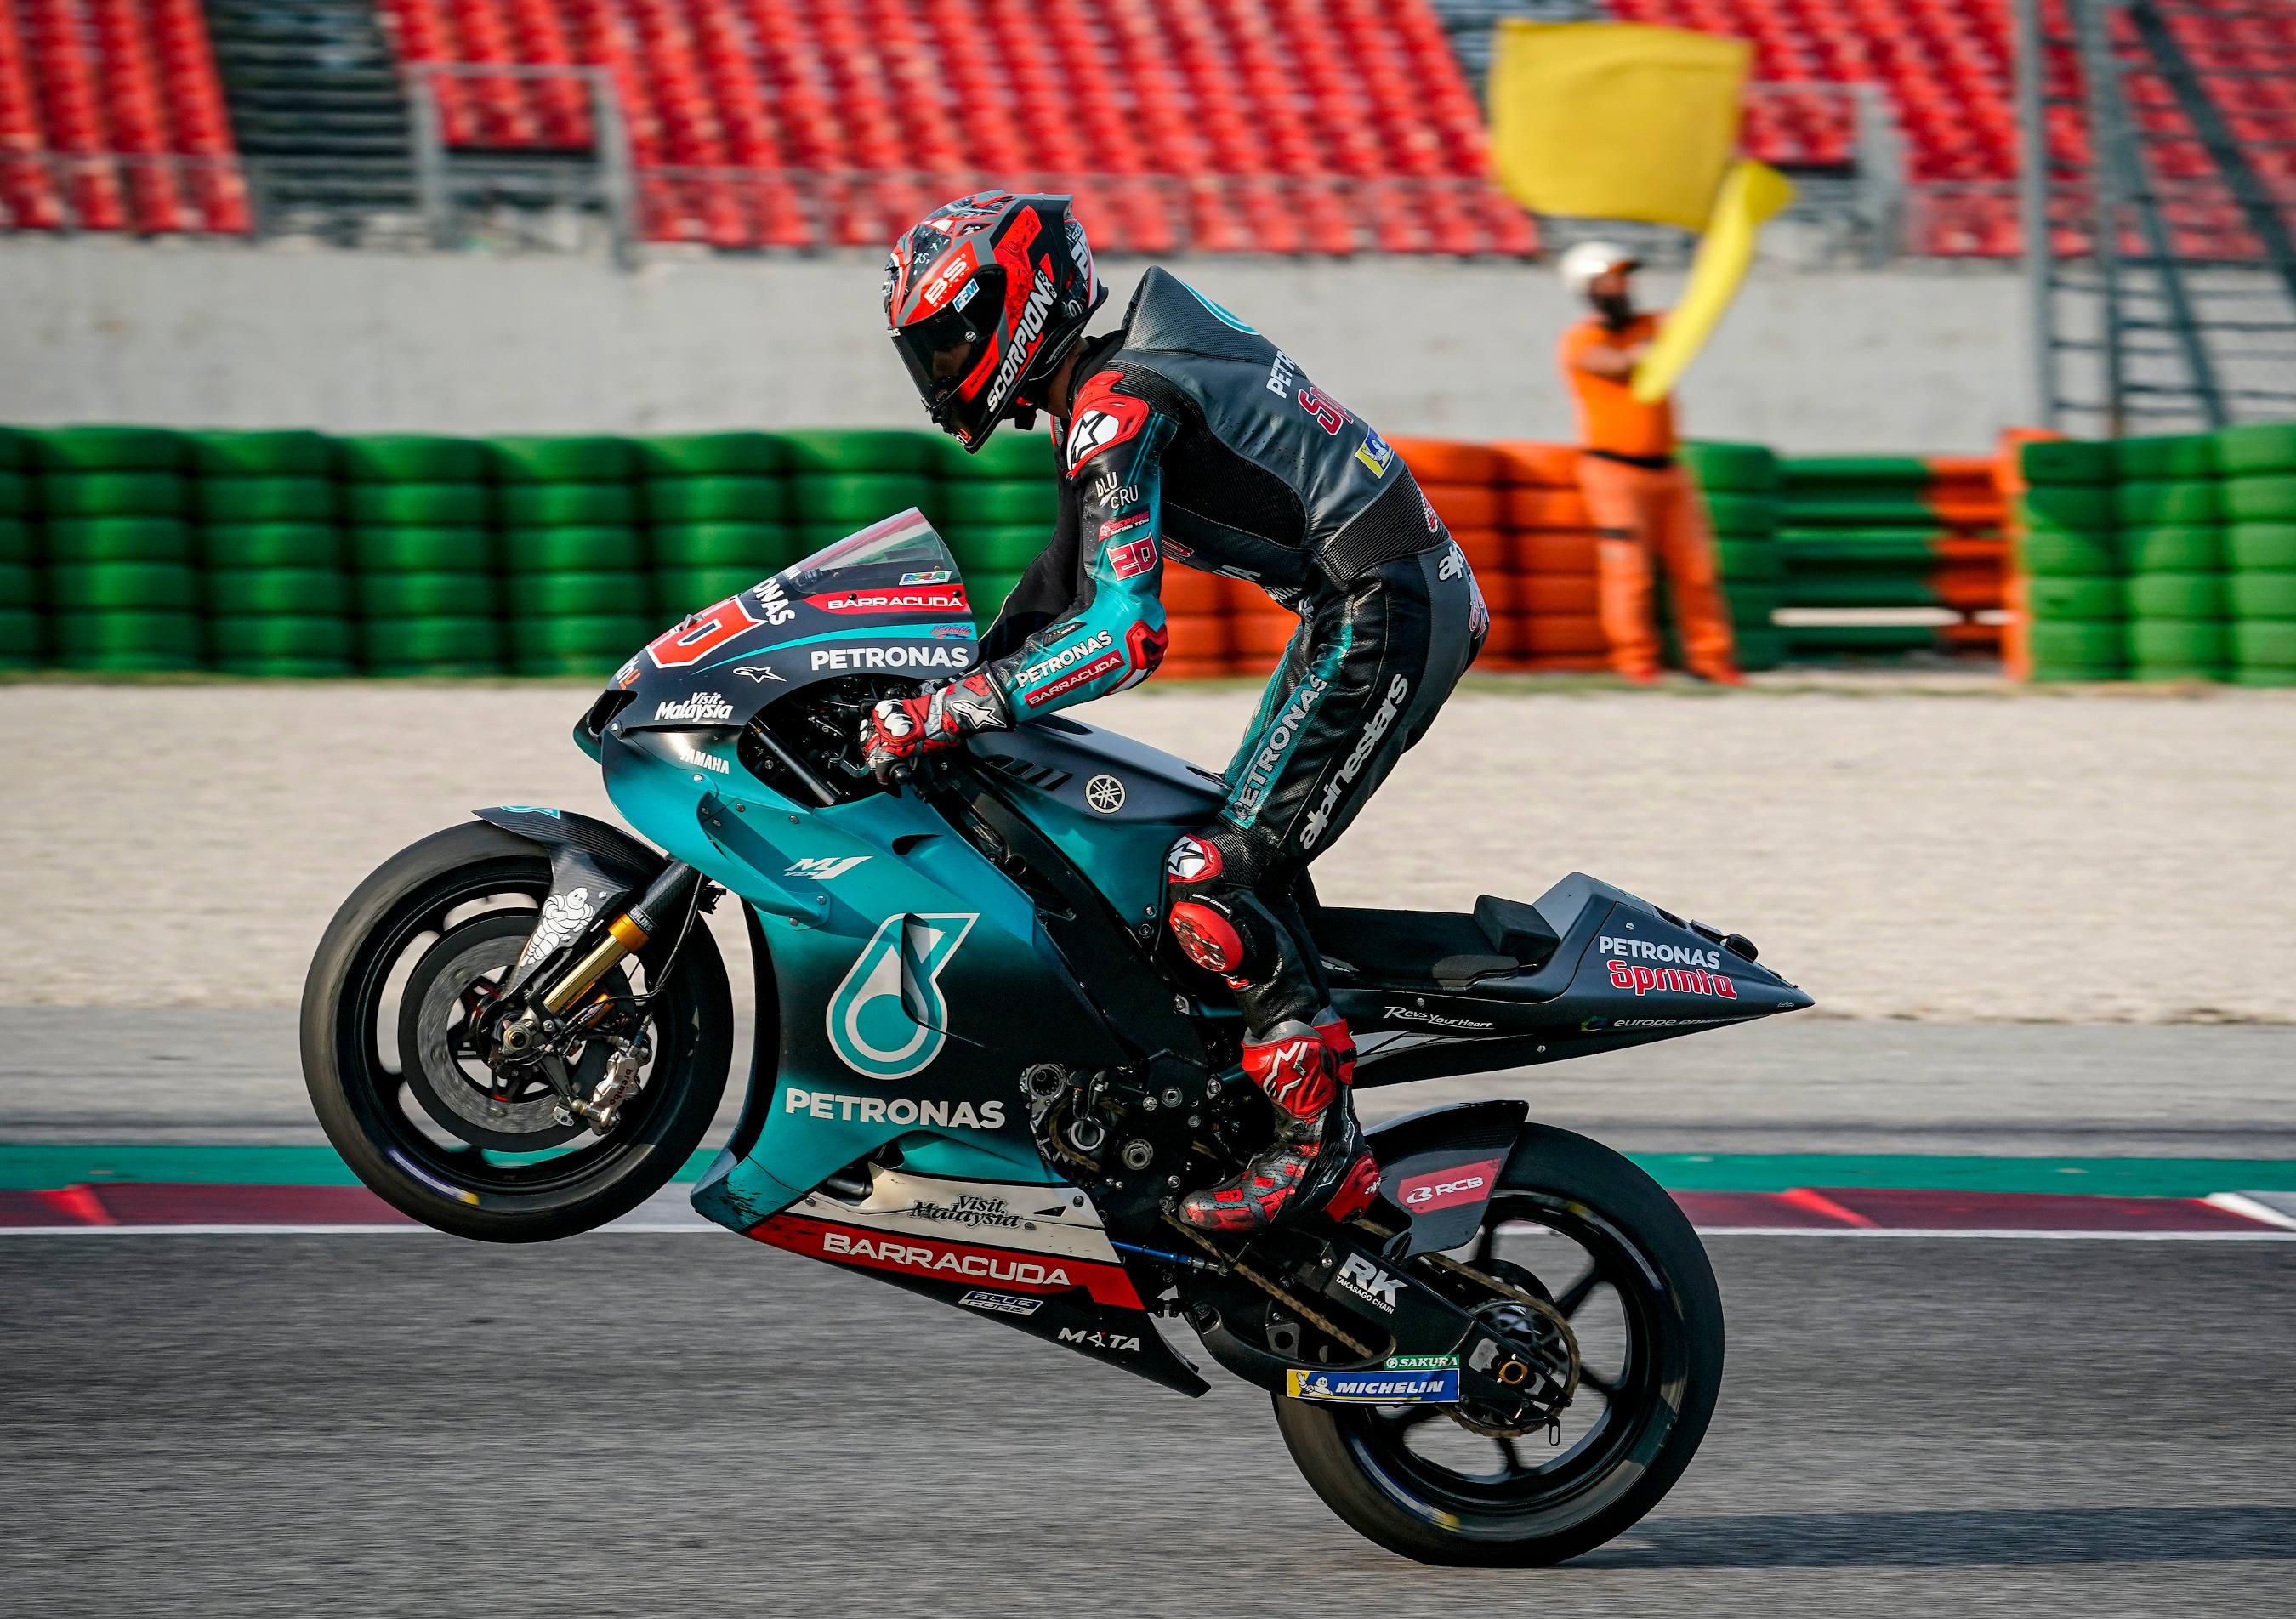 Quartararo Fastest at Misano MotoGP Test